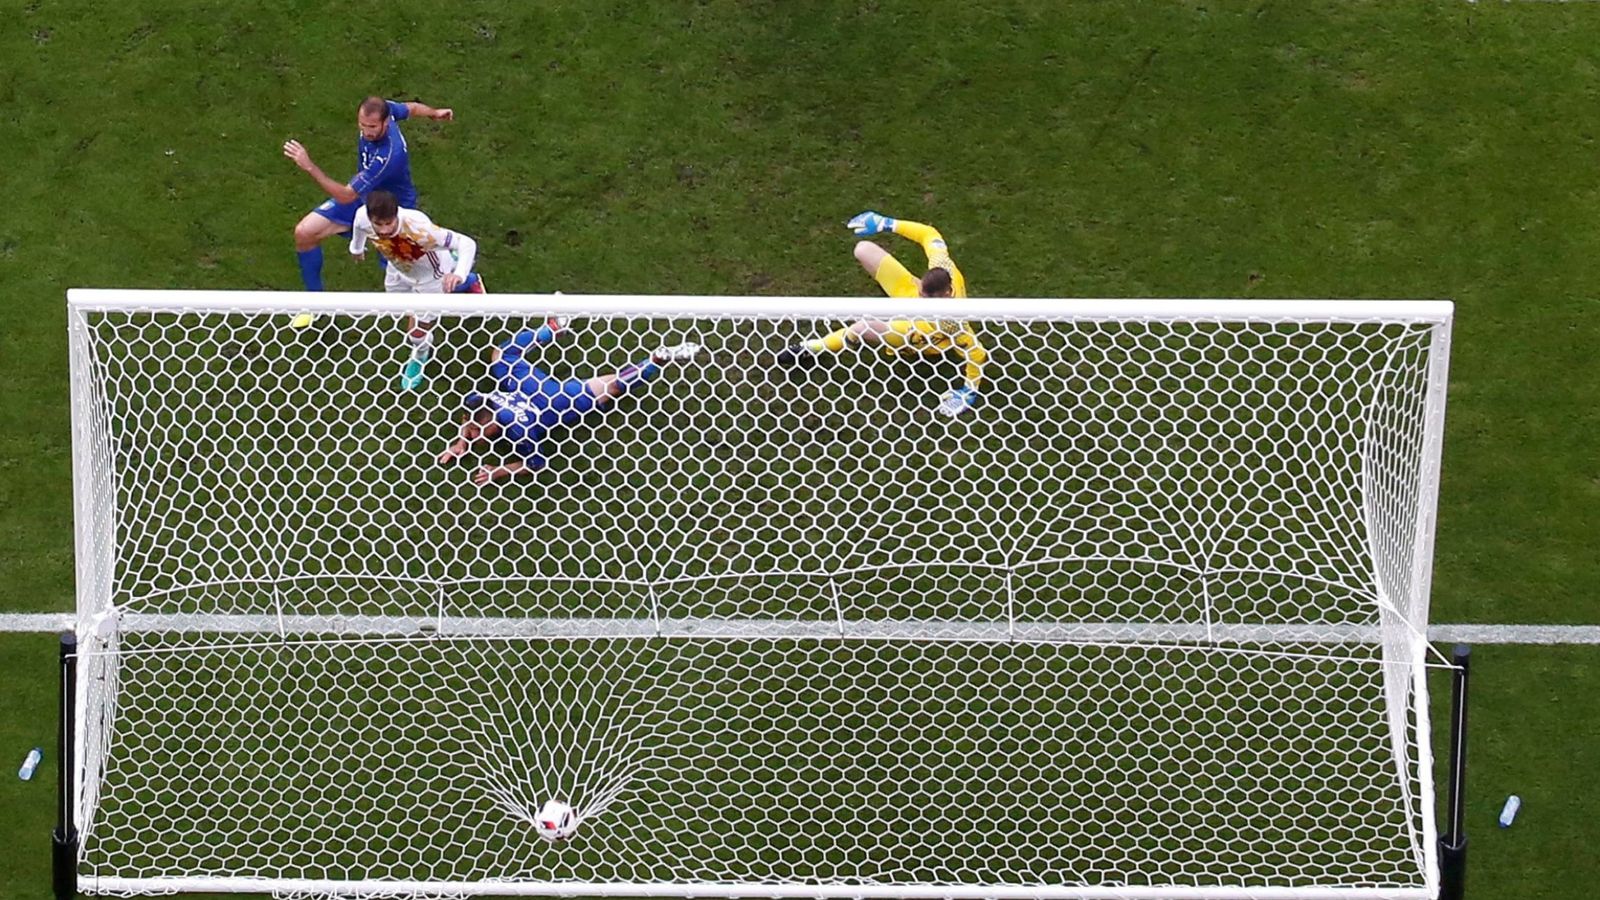 Foto: El gol marcado por Chiellini contra España. (Reuters)